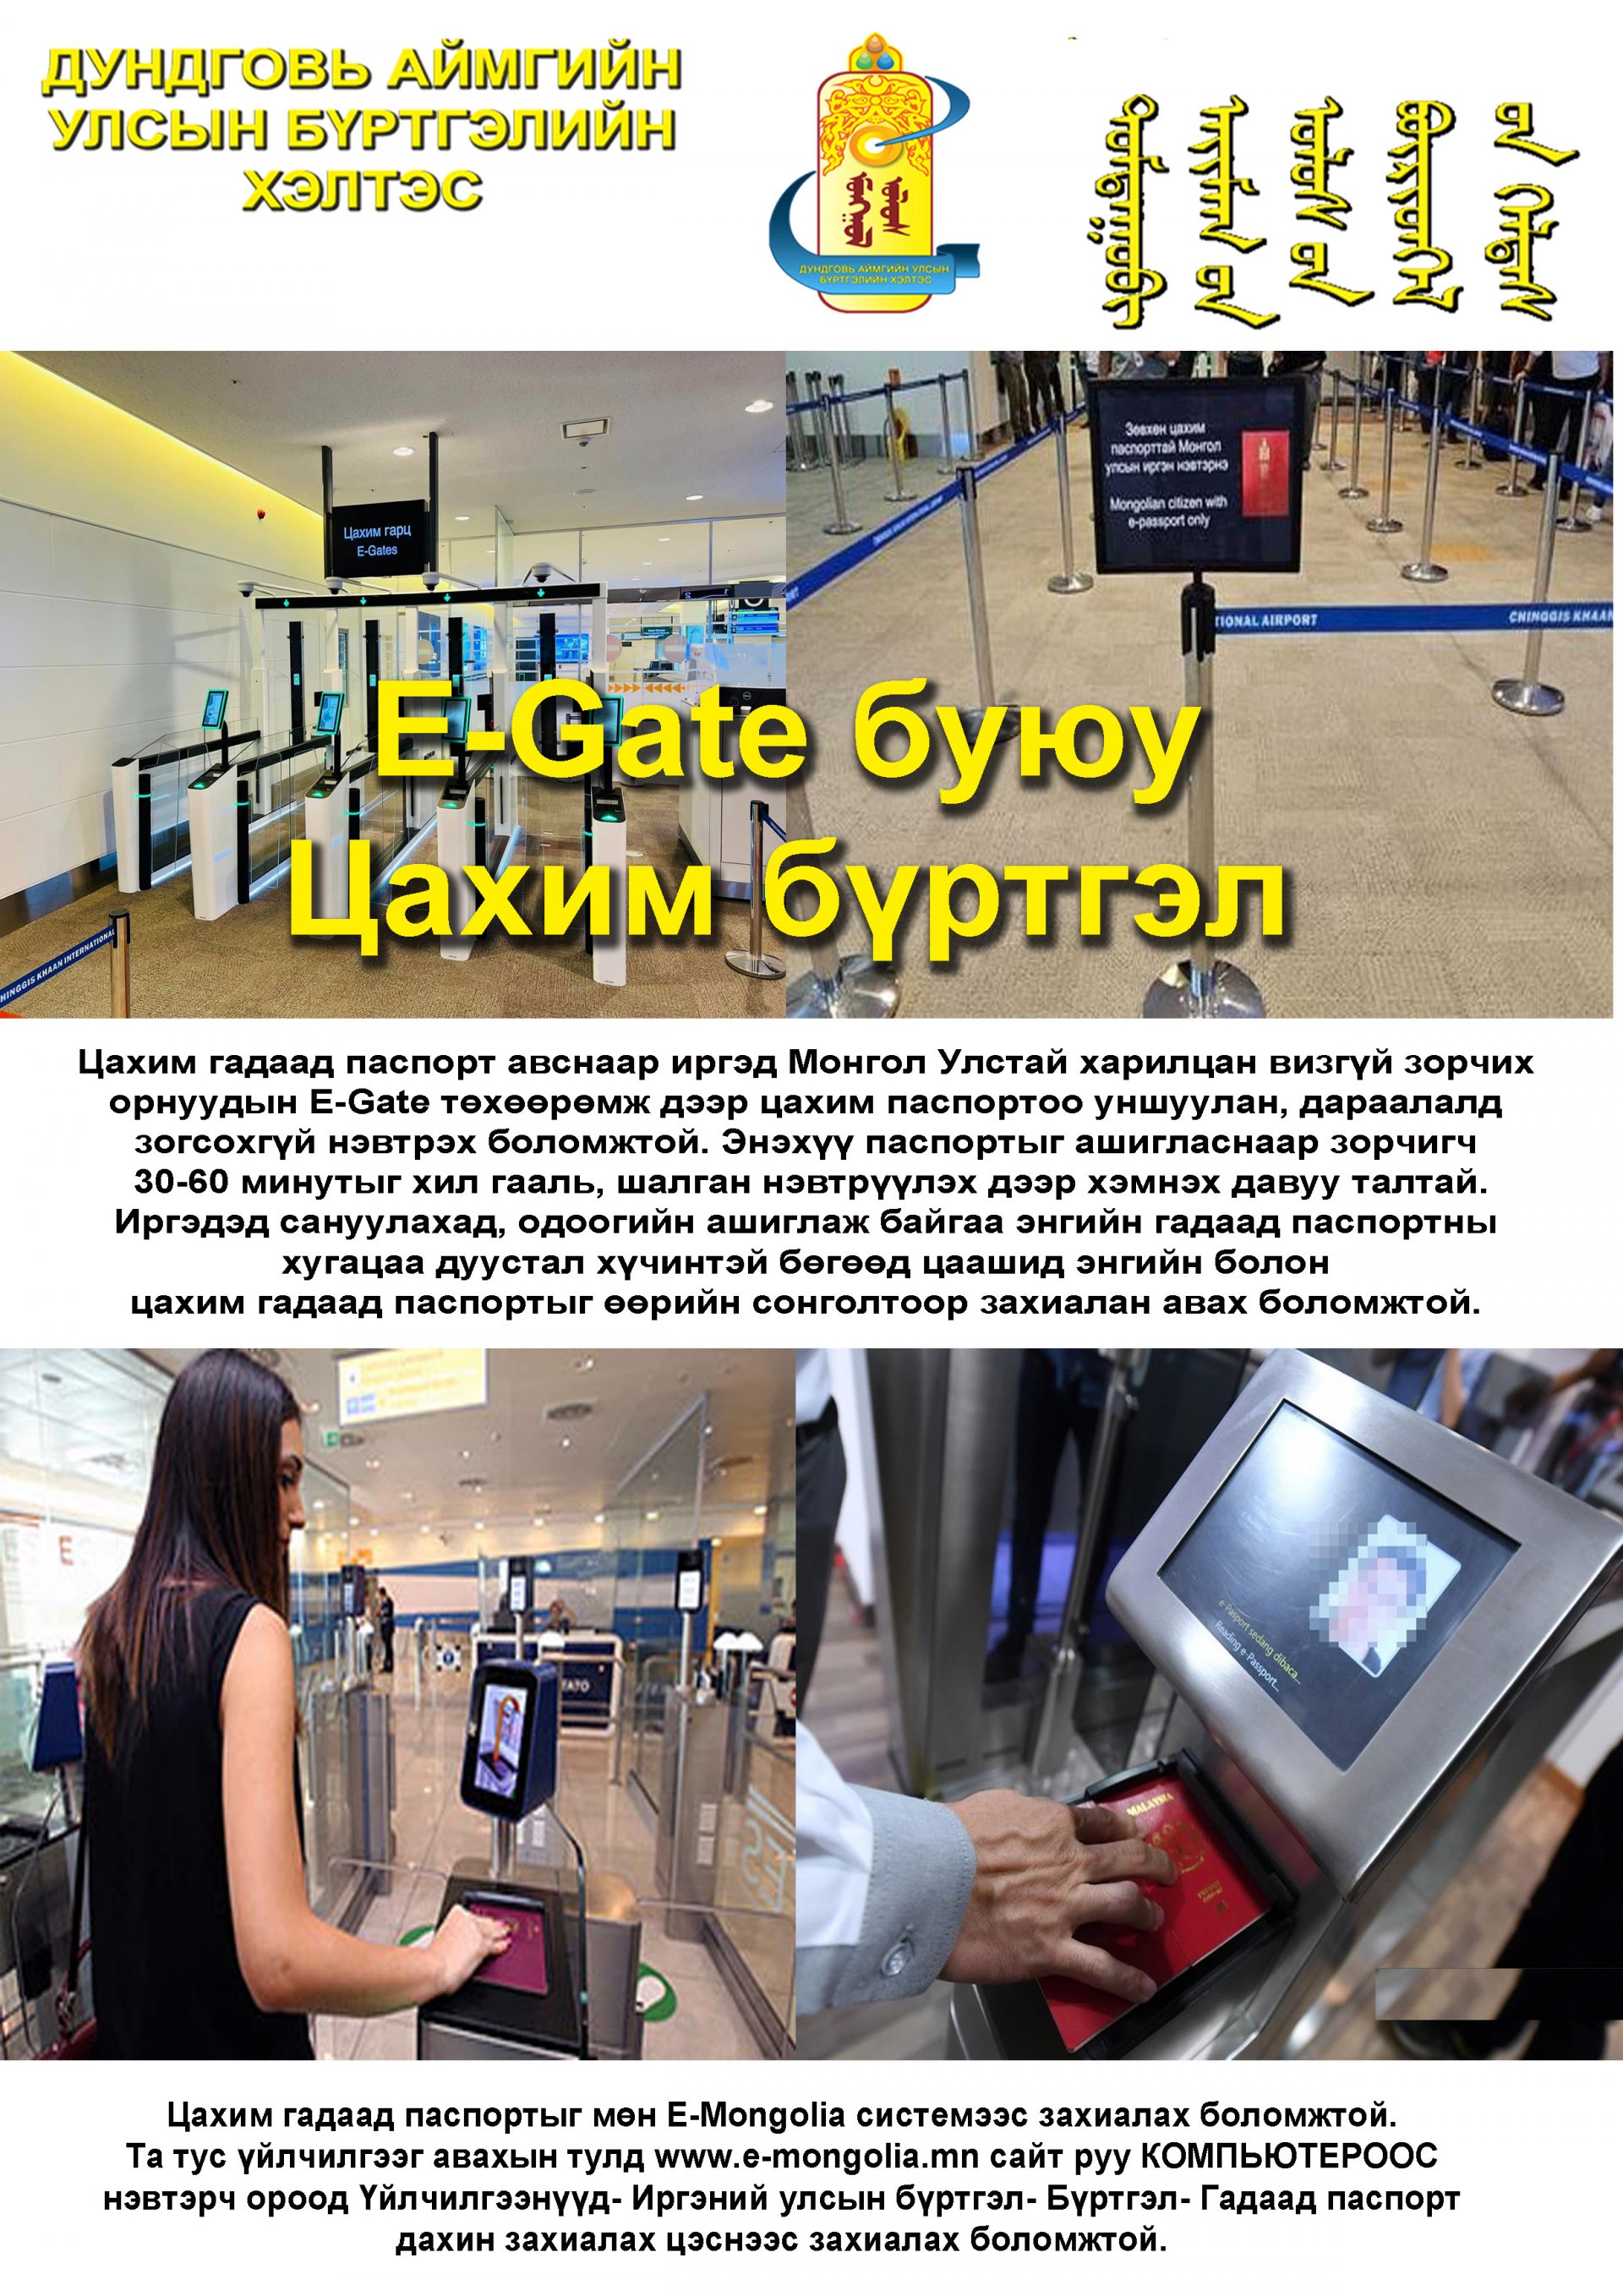 E-Gate төхөөрөмж дээр цахим паспортоо уншуулан, дараалалд зогсохгүй нэвтрэх боломжтой.